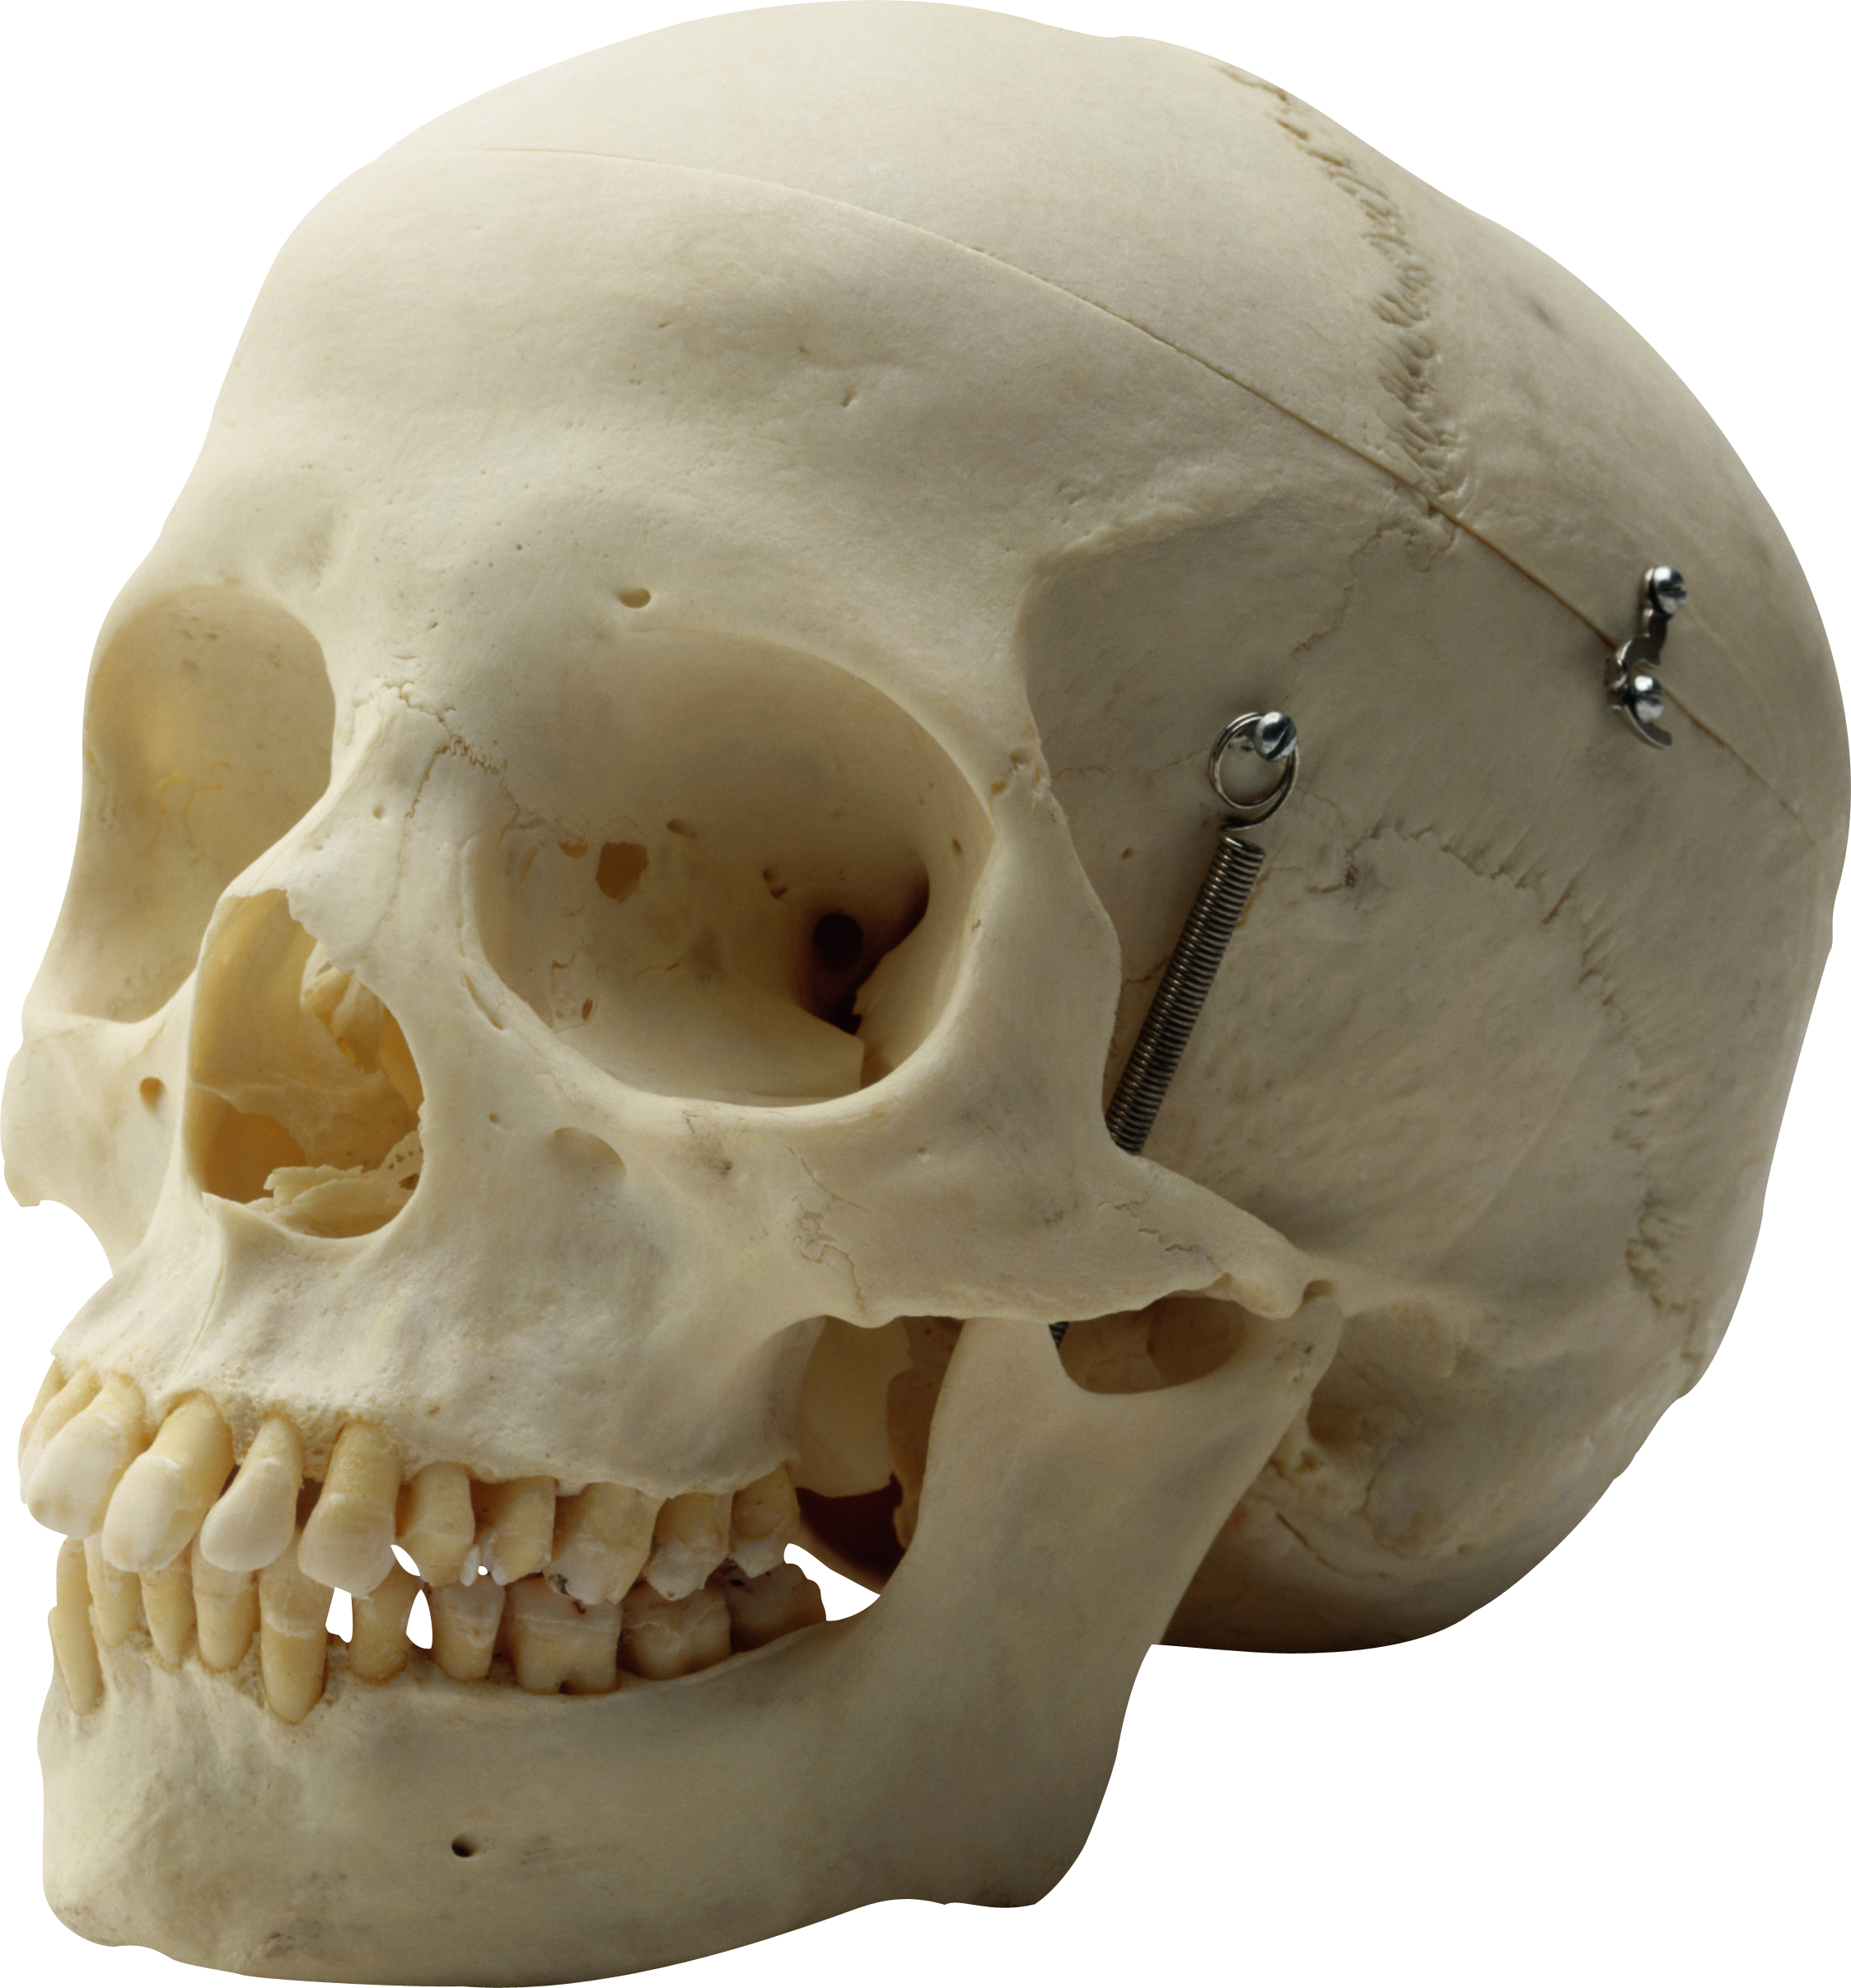 Bone head